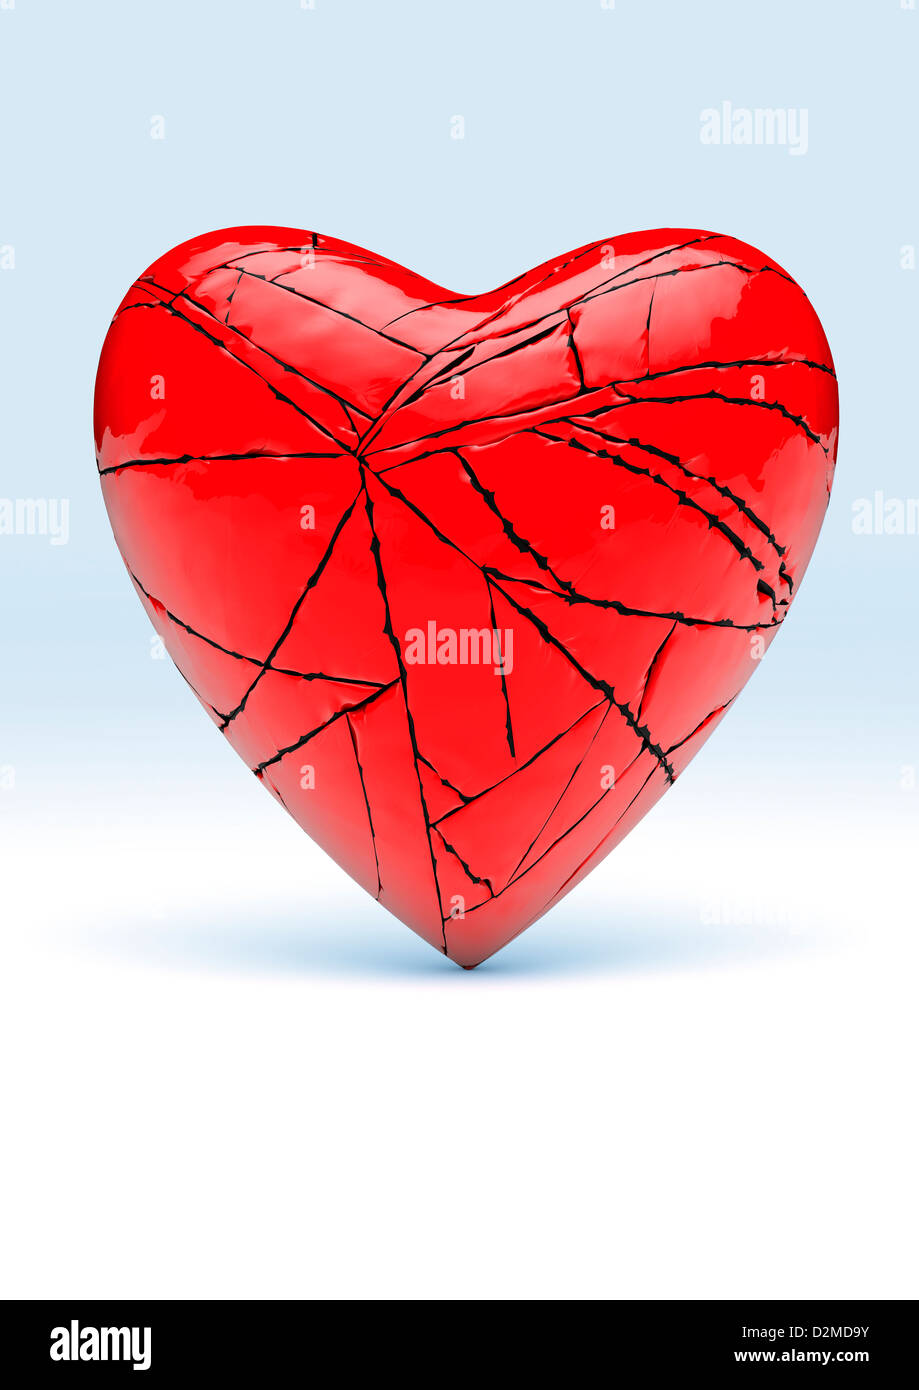 Cuore rotto - rosso amore relazioni di cuore / rapporto rompere concept Foto Stock